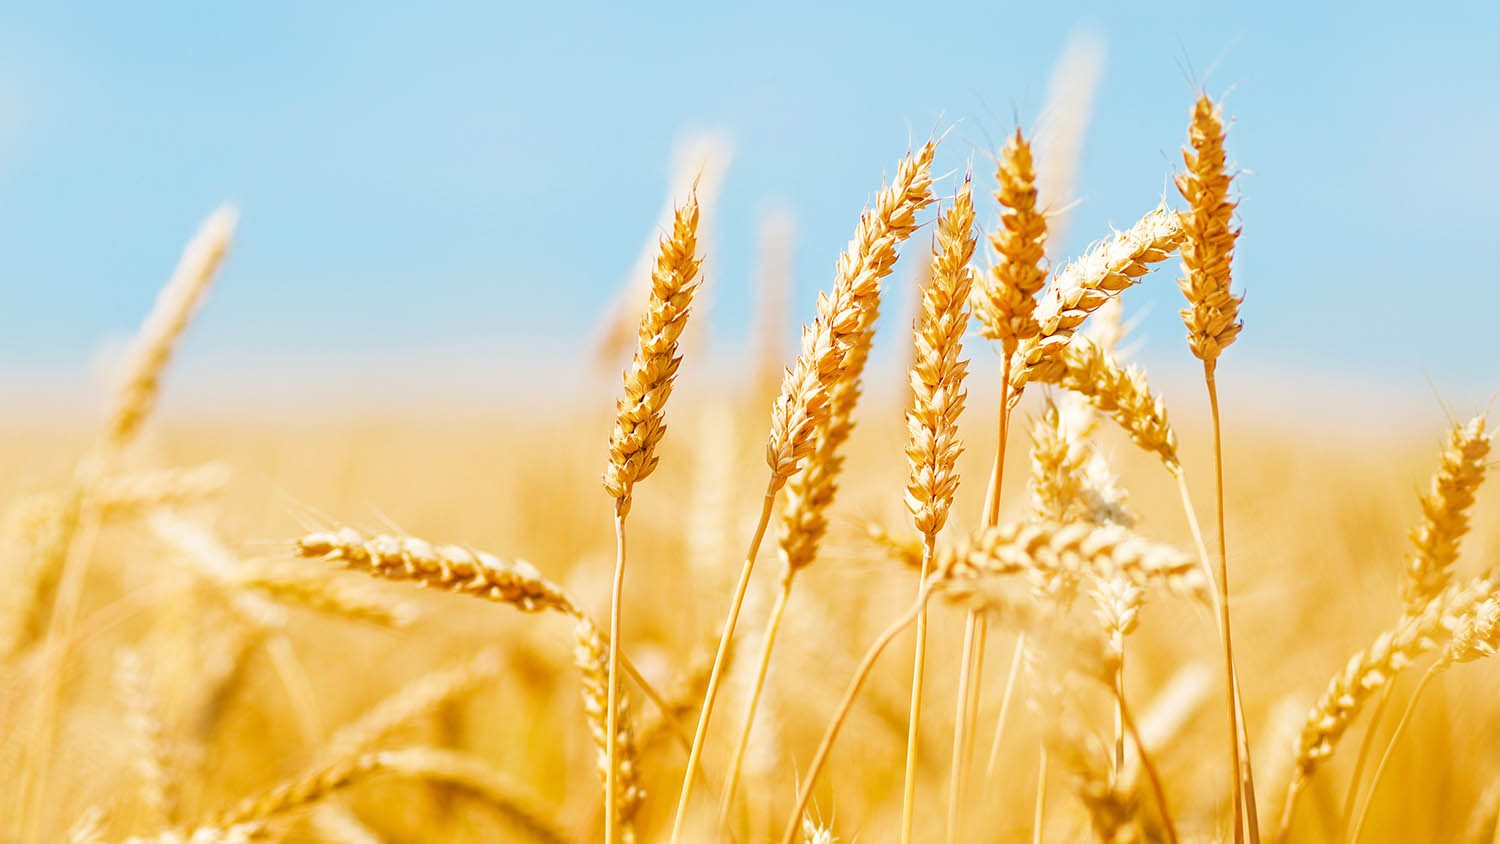 wheat field under a blue sky